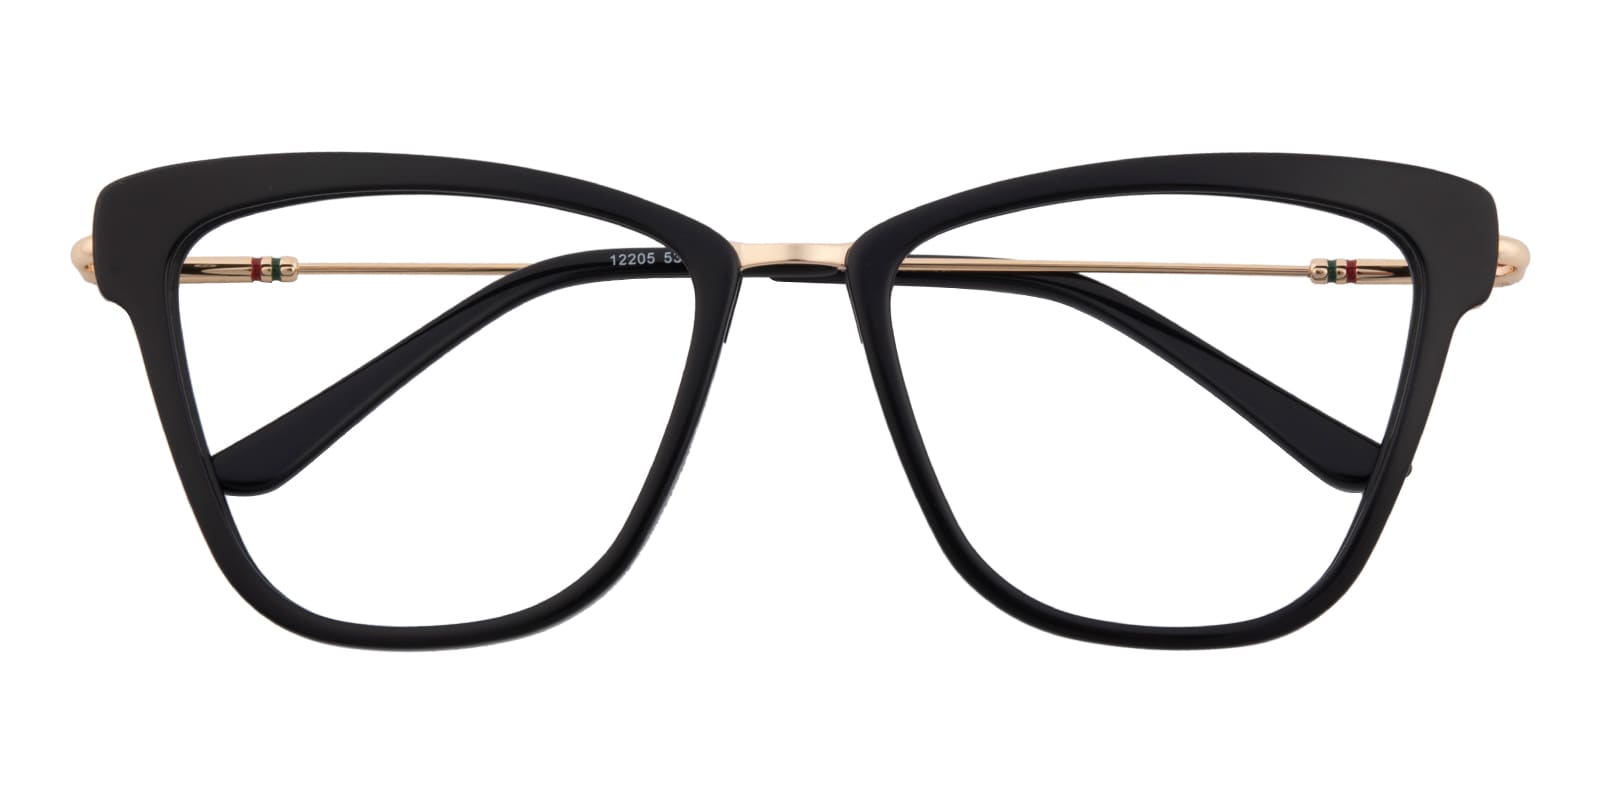 Cat Eye Eyeglasses, Full Frame Black/Golden Plastic - FZ2013